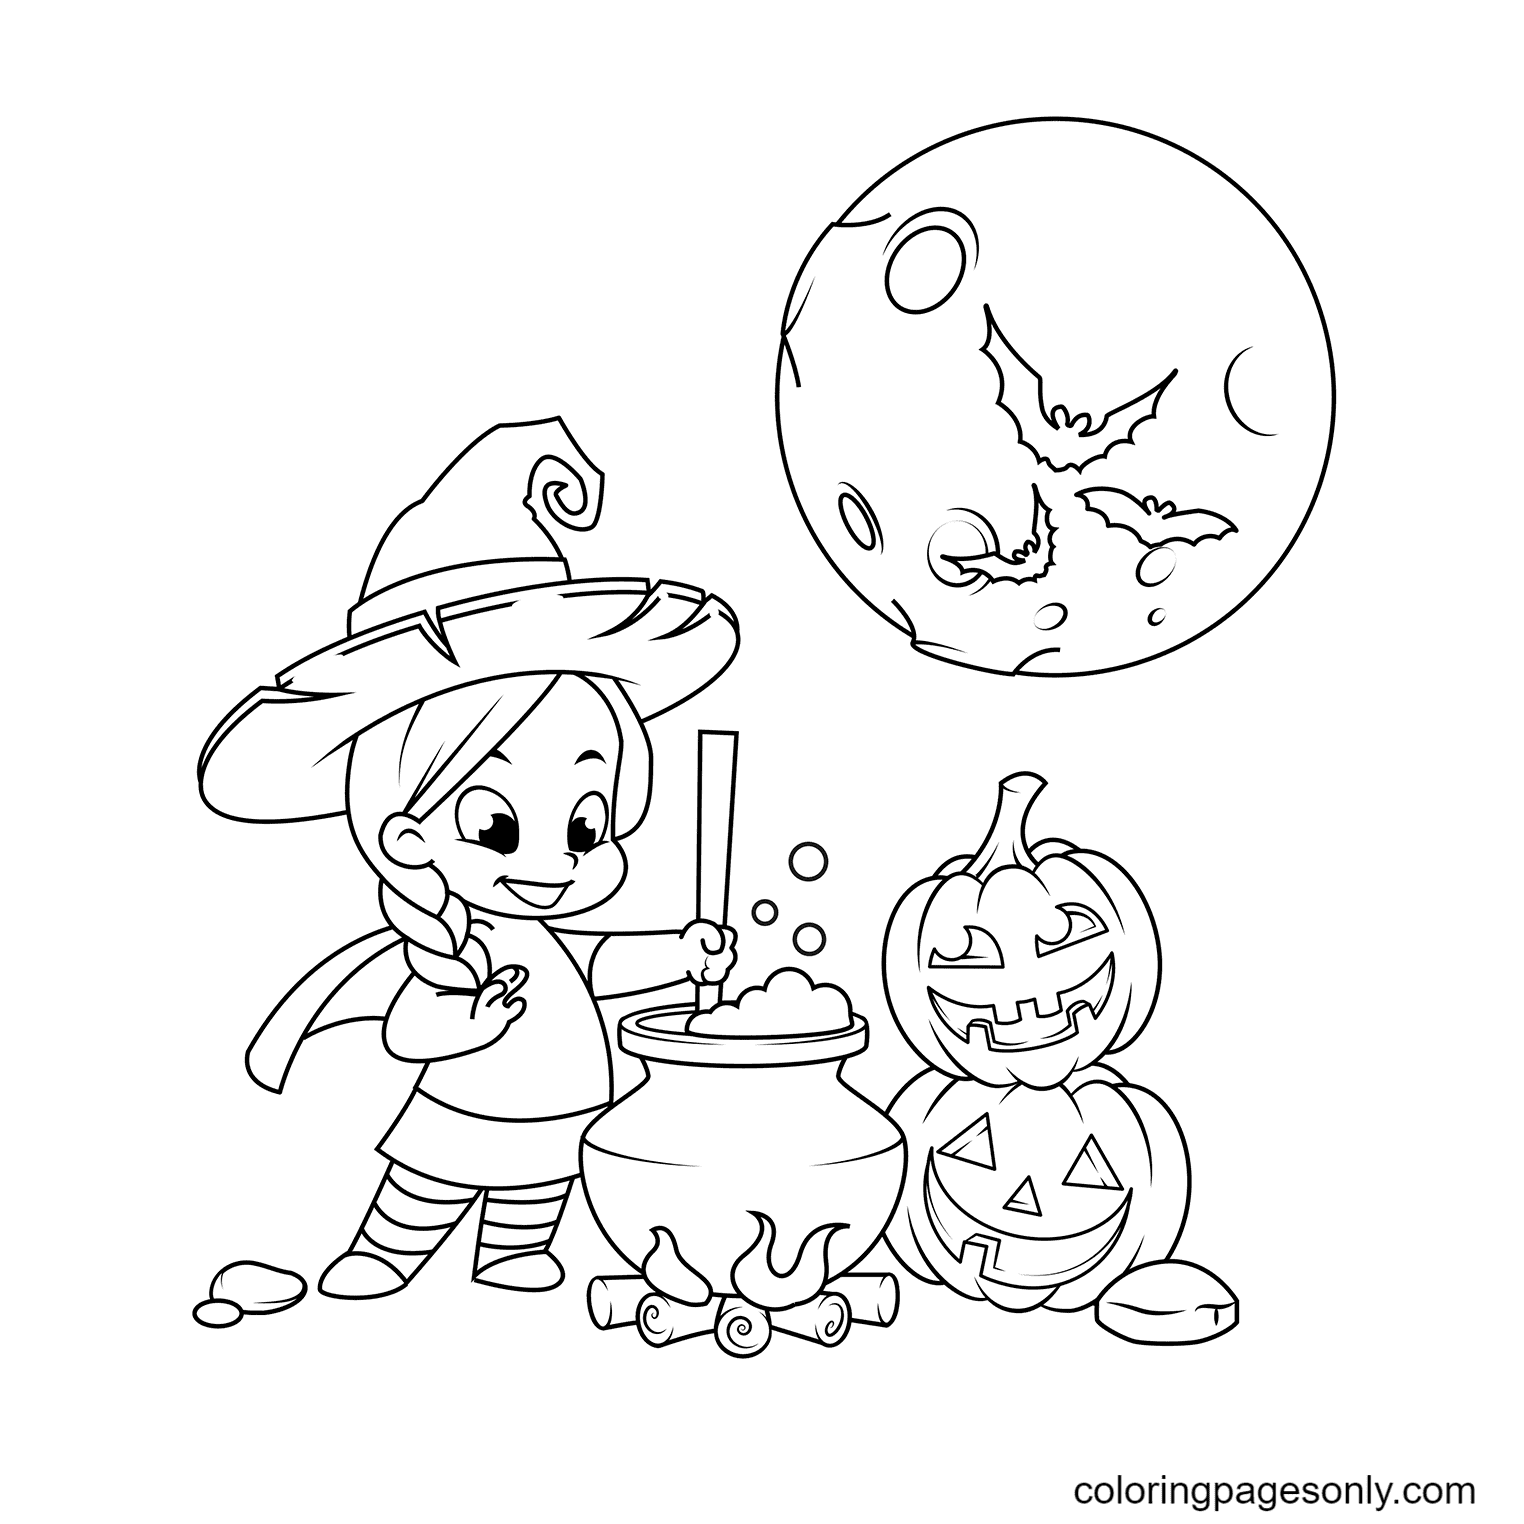 Милая маленькая ведьма готовит зелье в котле из Хэллоуинской ведьмы